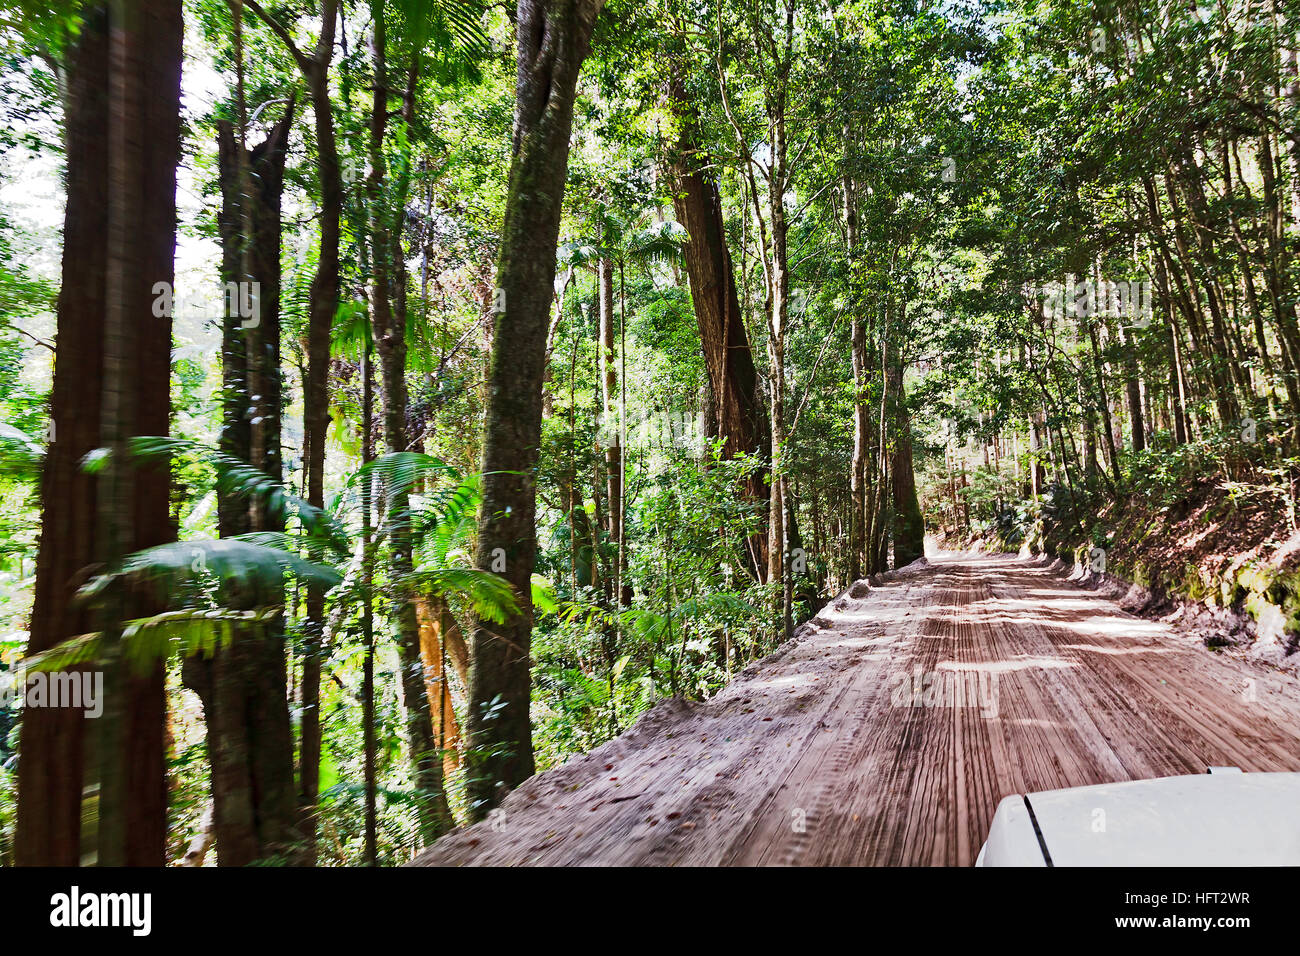 Australian Fraser Island rainforest strada sabbiosa dal veicolo in movimento a velocità quando alti alberi di gomma densa attorno al sentiero. Foto Stock